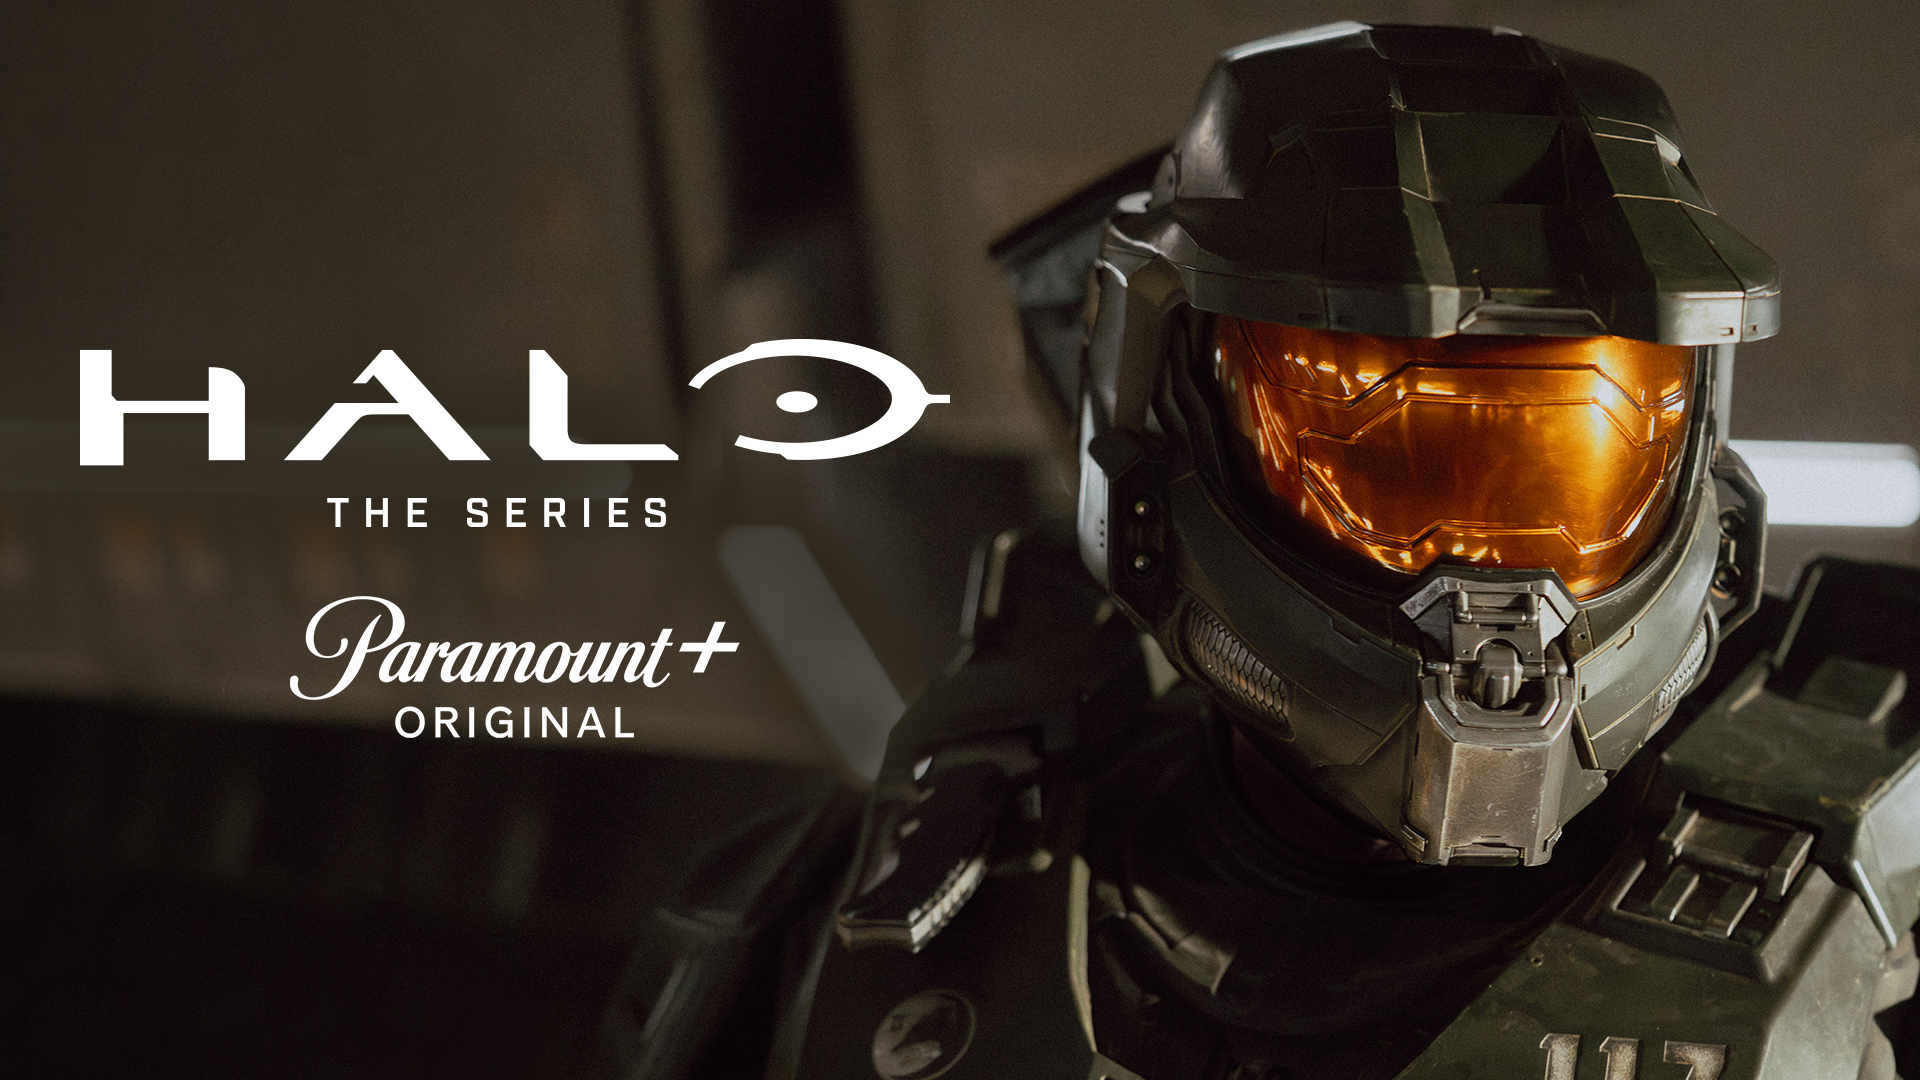 Celebra el estreno de la Segunda temporada de Halo en Paramount+ con